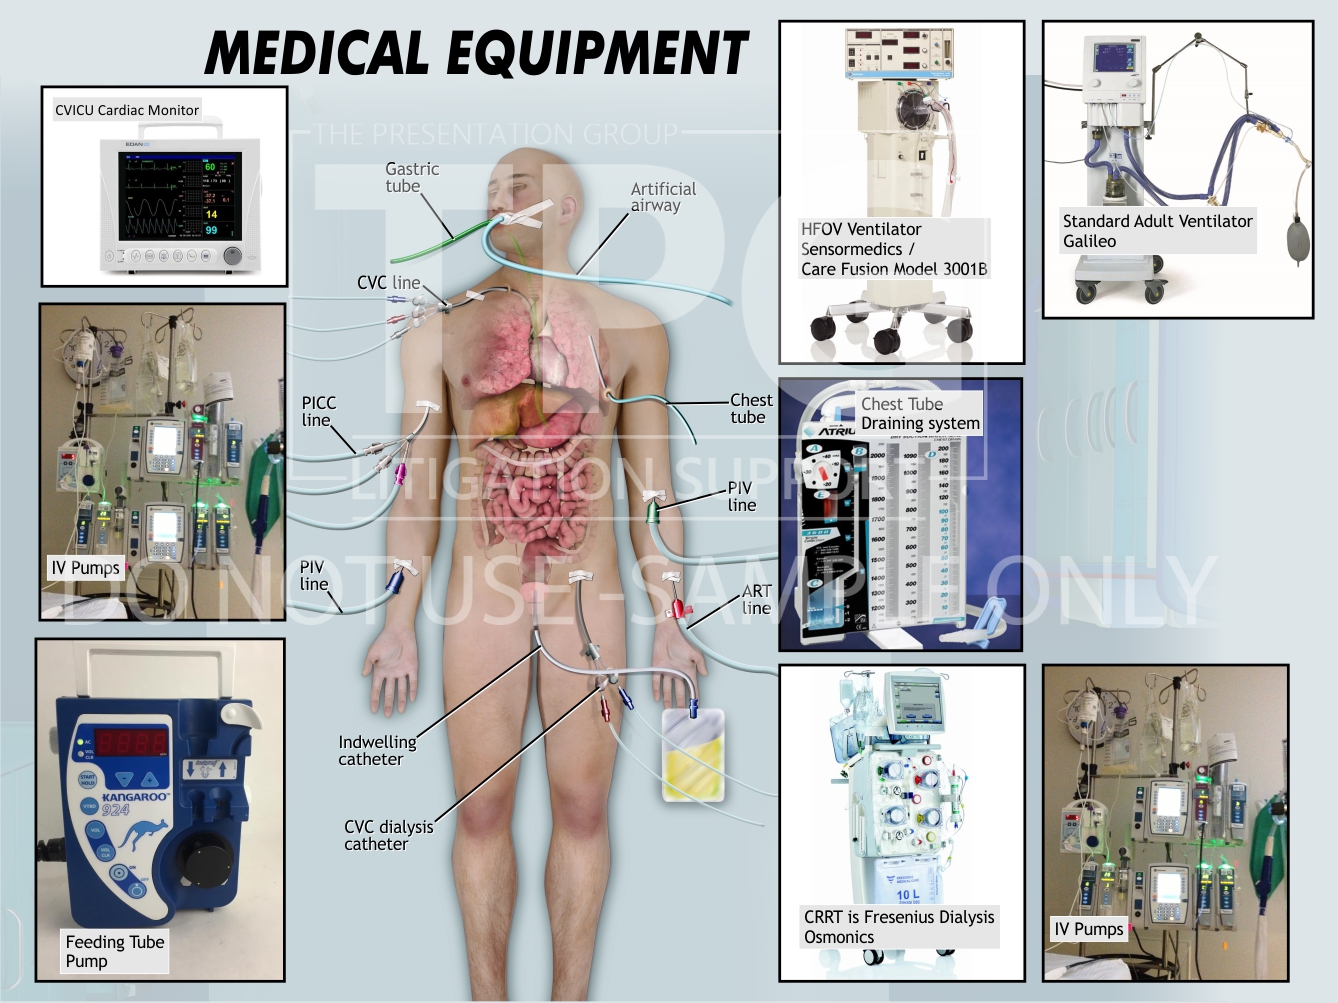 Medical Equipment/Medical Illustration - Presentation Group